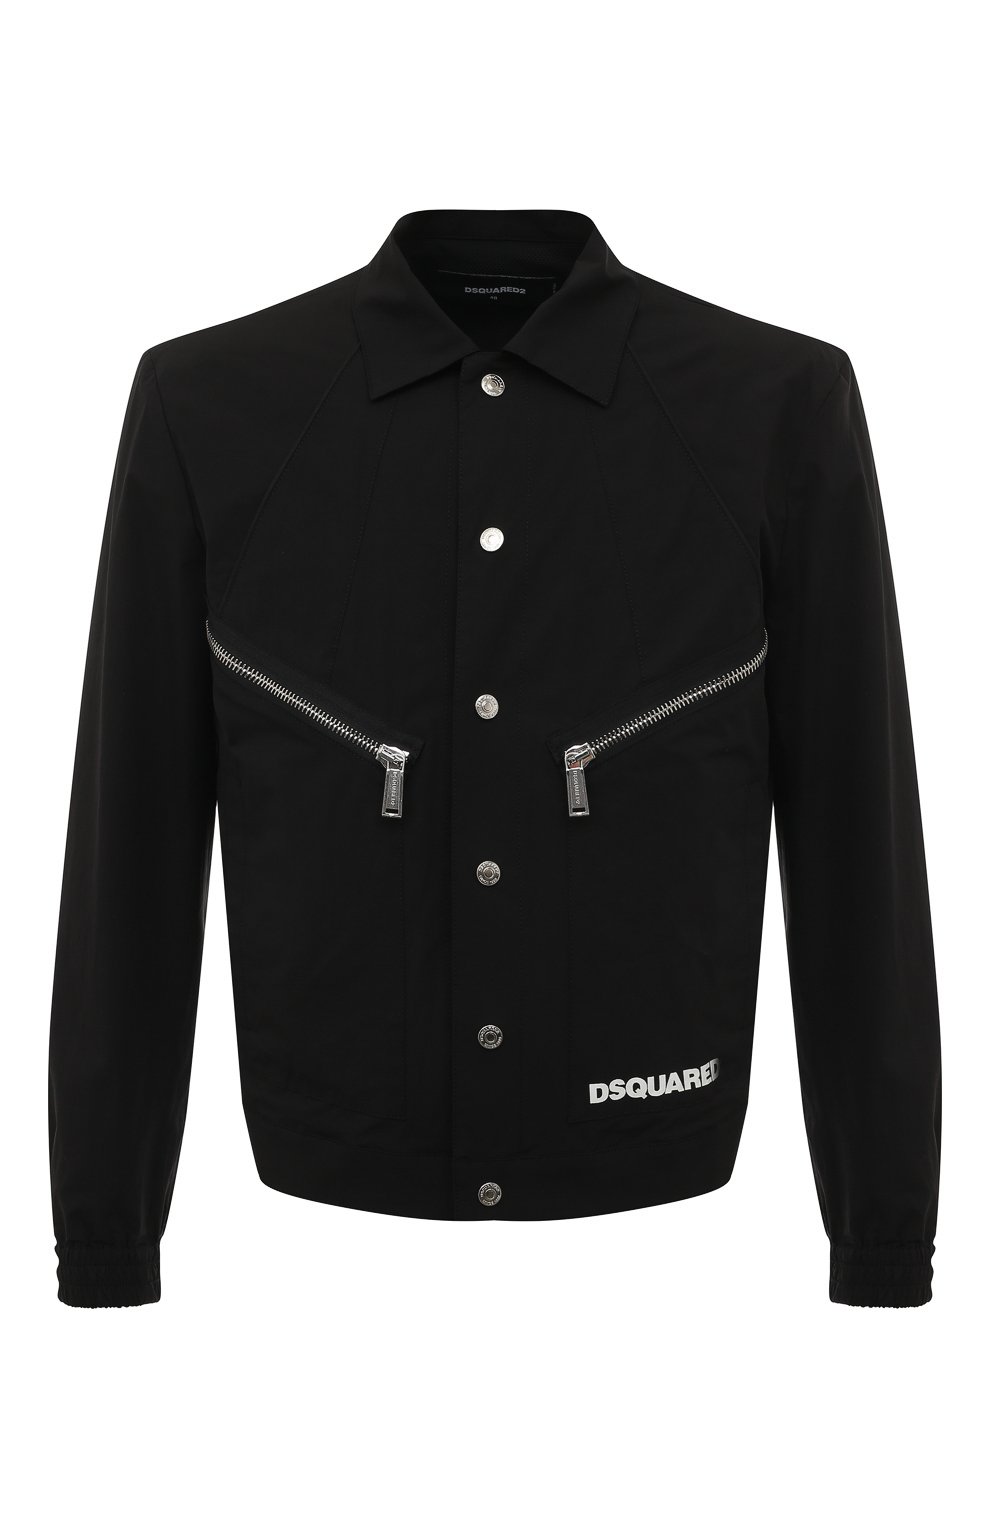 Куртки Dsquared2, Хлопковая куртка Dsquared2, Италия, Чёрный, Хлопок: 97%; Эластан (Полиуретан): 3%; Подкладка-полиамид: 100%;, 13300075  - купить